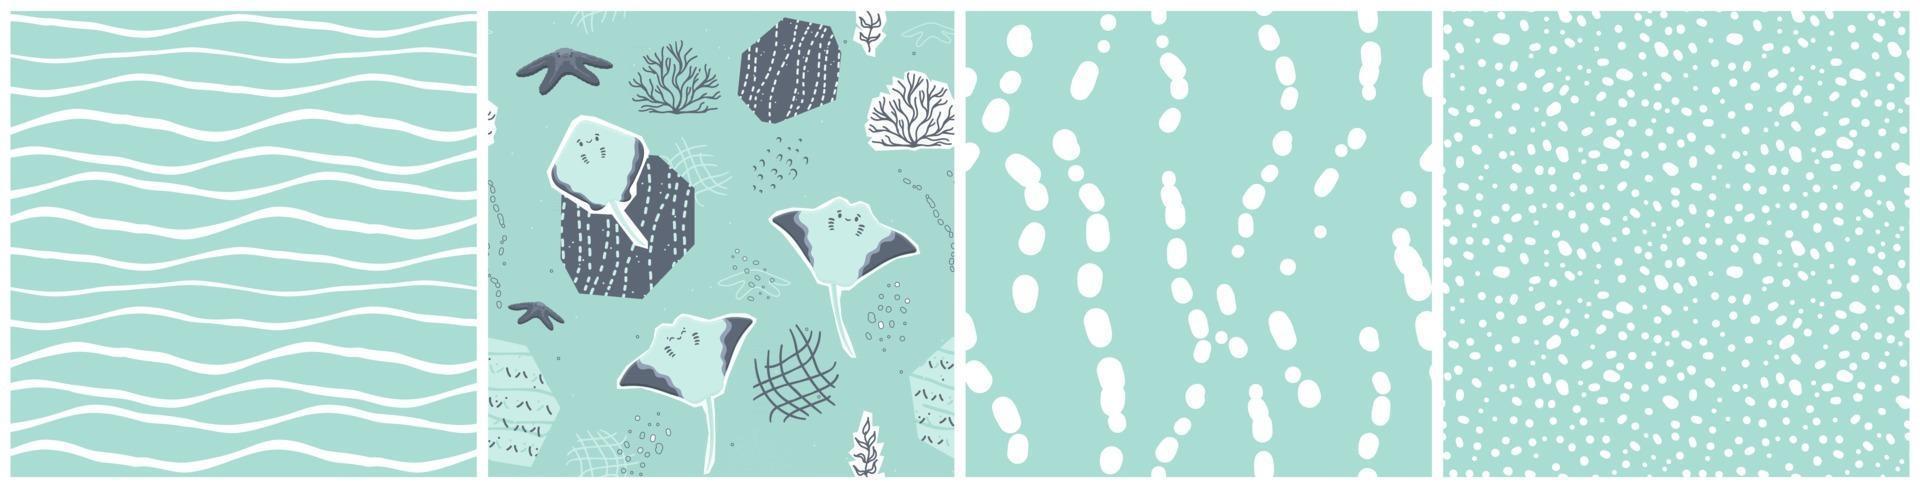 conjunto de patrones sin fin de dibujos animados lindos mantarrayas felices estrella de mar efecto de papel cortado de algas vector